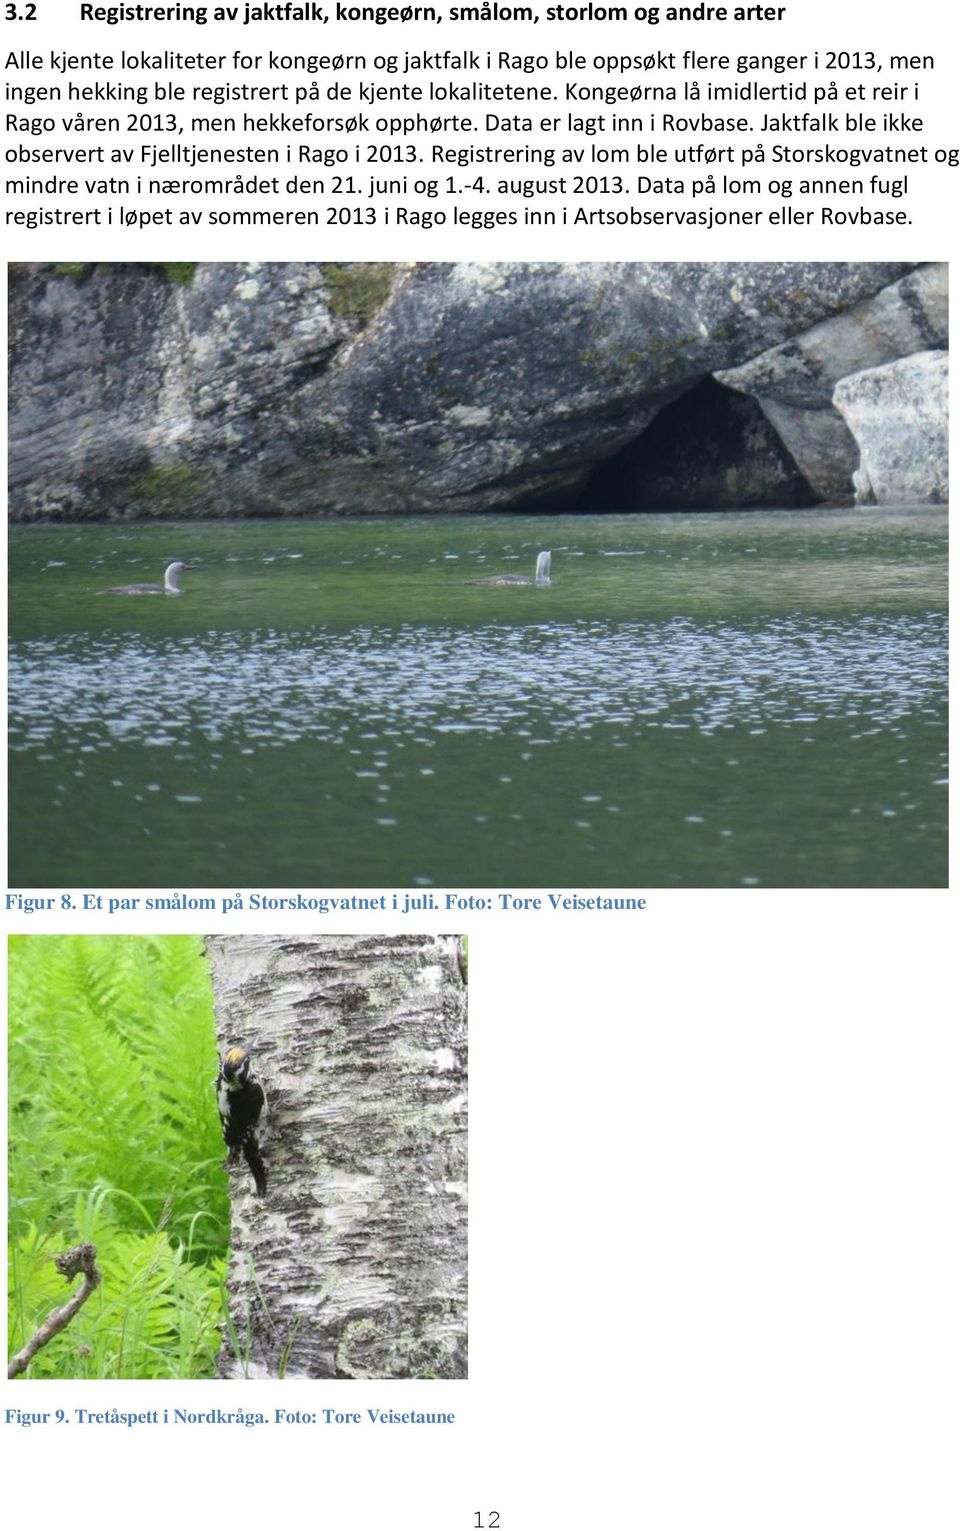 Jaktfalk ble ikke observert av Fjelltjenesten i Rago i 2013. Registrering av lom ble utført på Storskogvatnet og mindre vatn i nærområdet den 21. juni og 1.-4. august 2013.